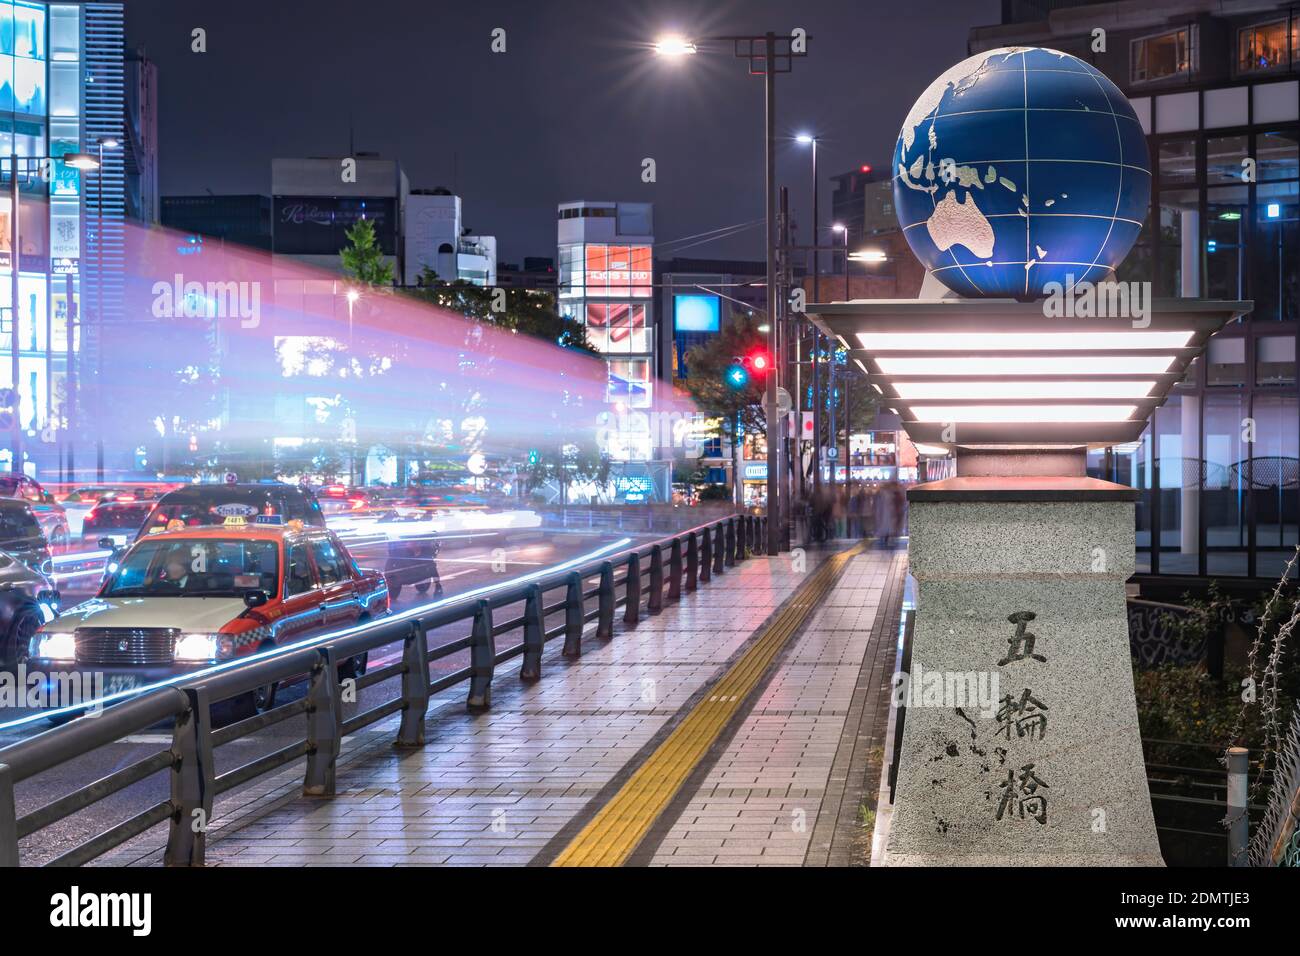 tokyo, japon - novembre 02 2019 : voitures phares éclairant le pont olympique nommé Gorinbashi créé pour les Jeux Olympiques d'été 1964 dans le quartier de Harajuku Banque D'Images